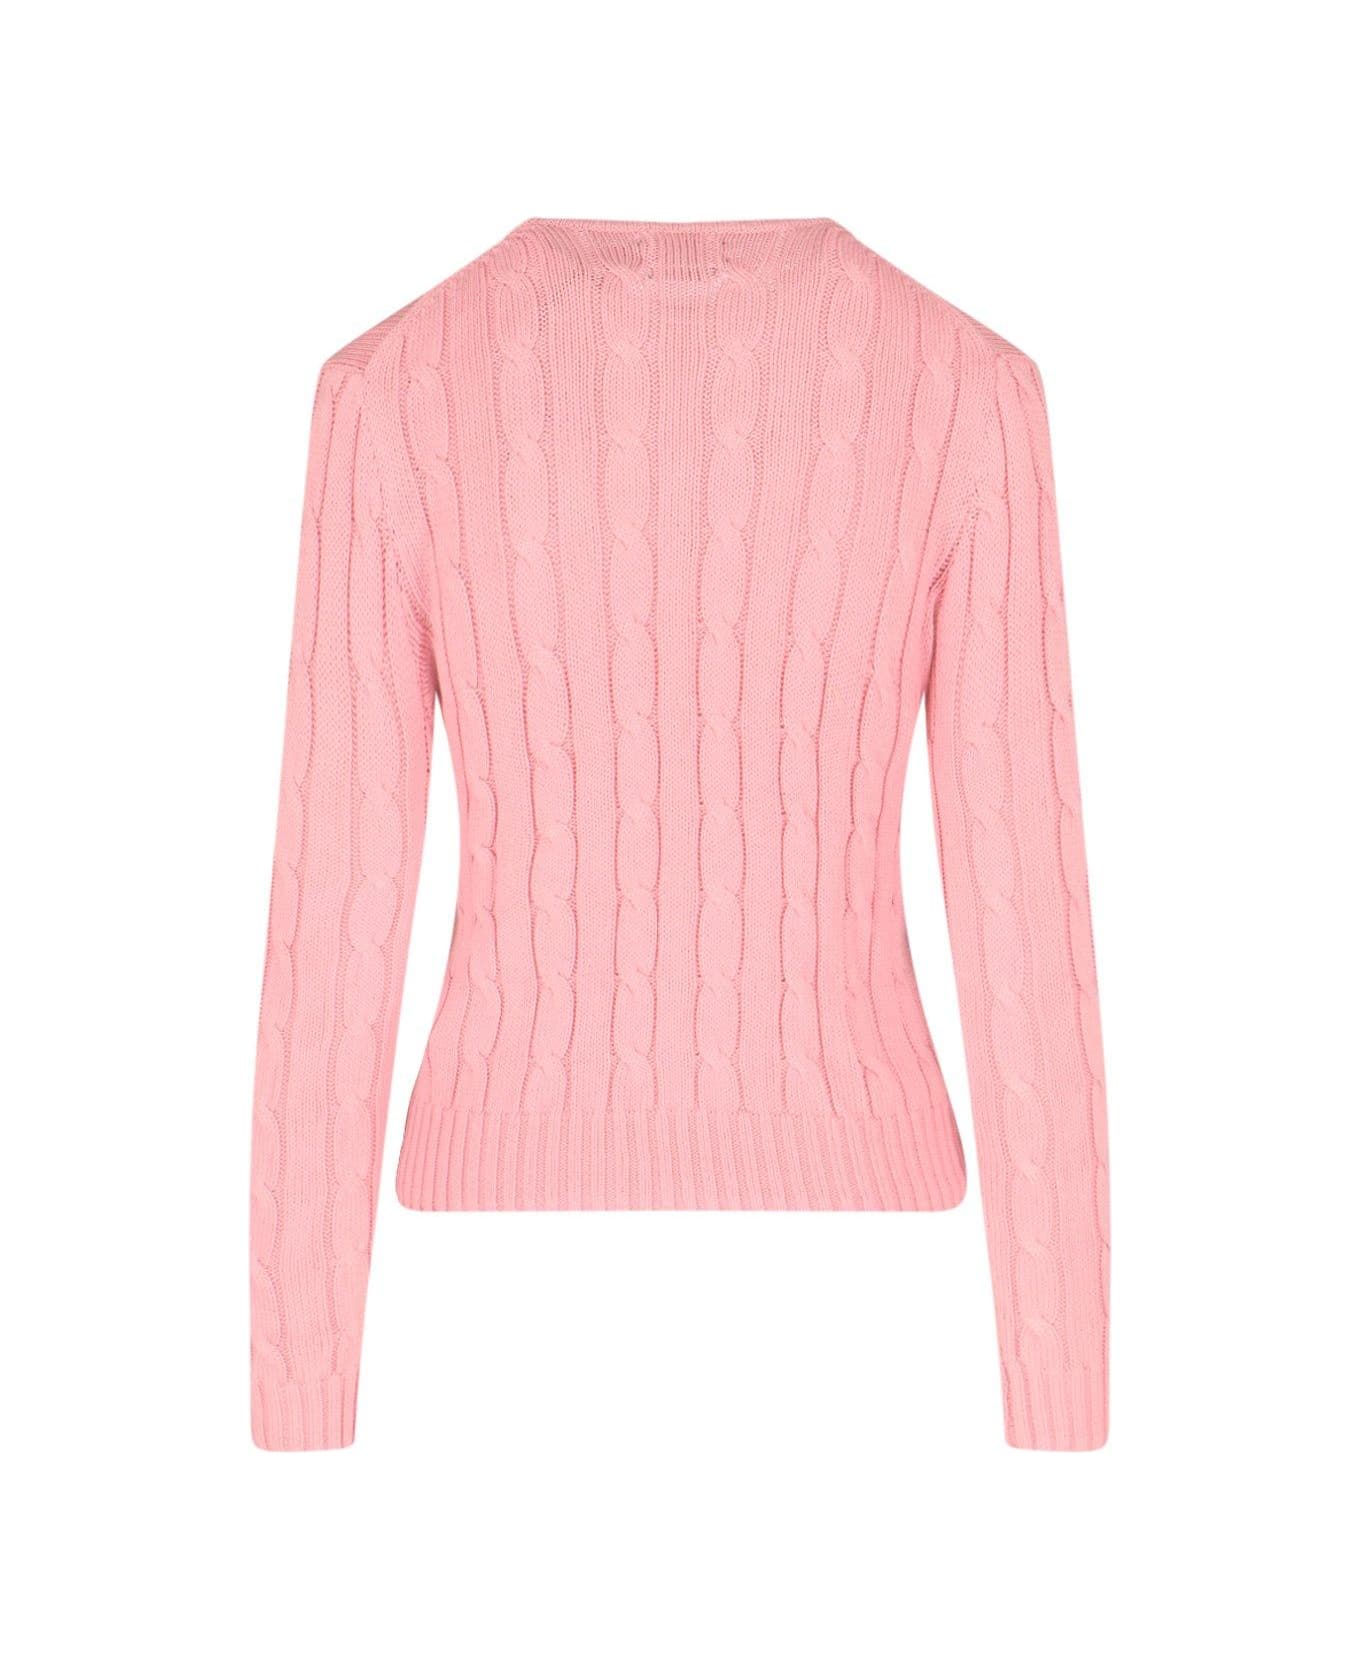 Ralph Lauren Julianna Long Sleeve Sweater - pink